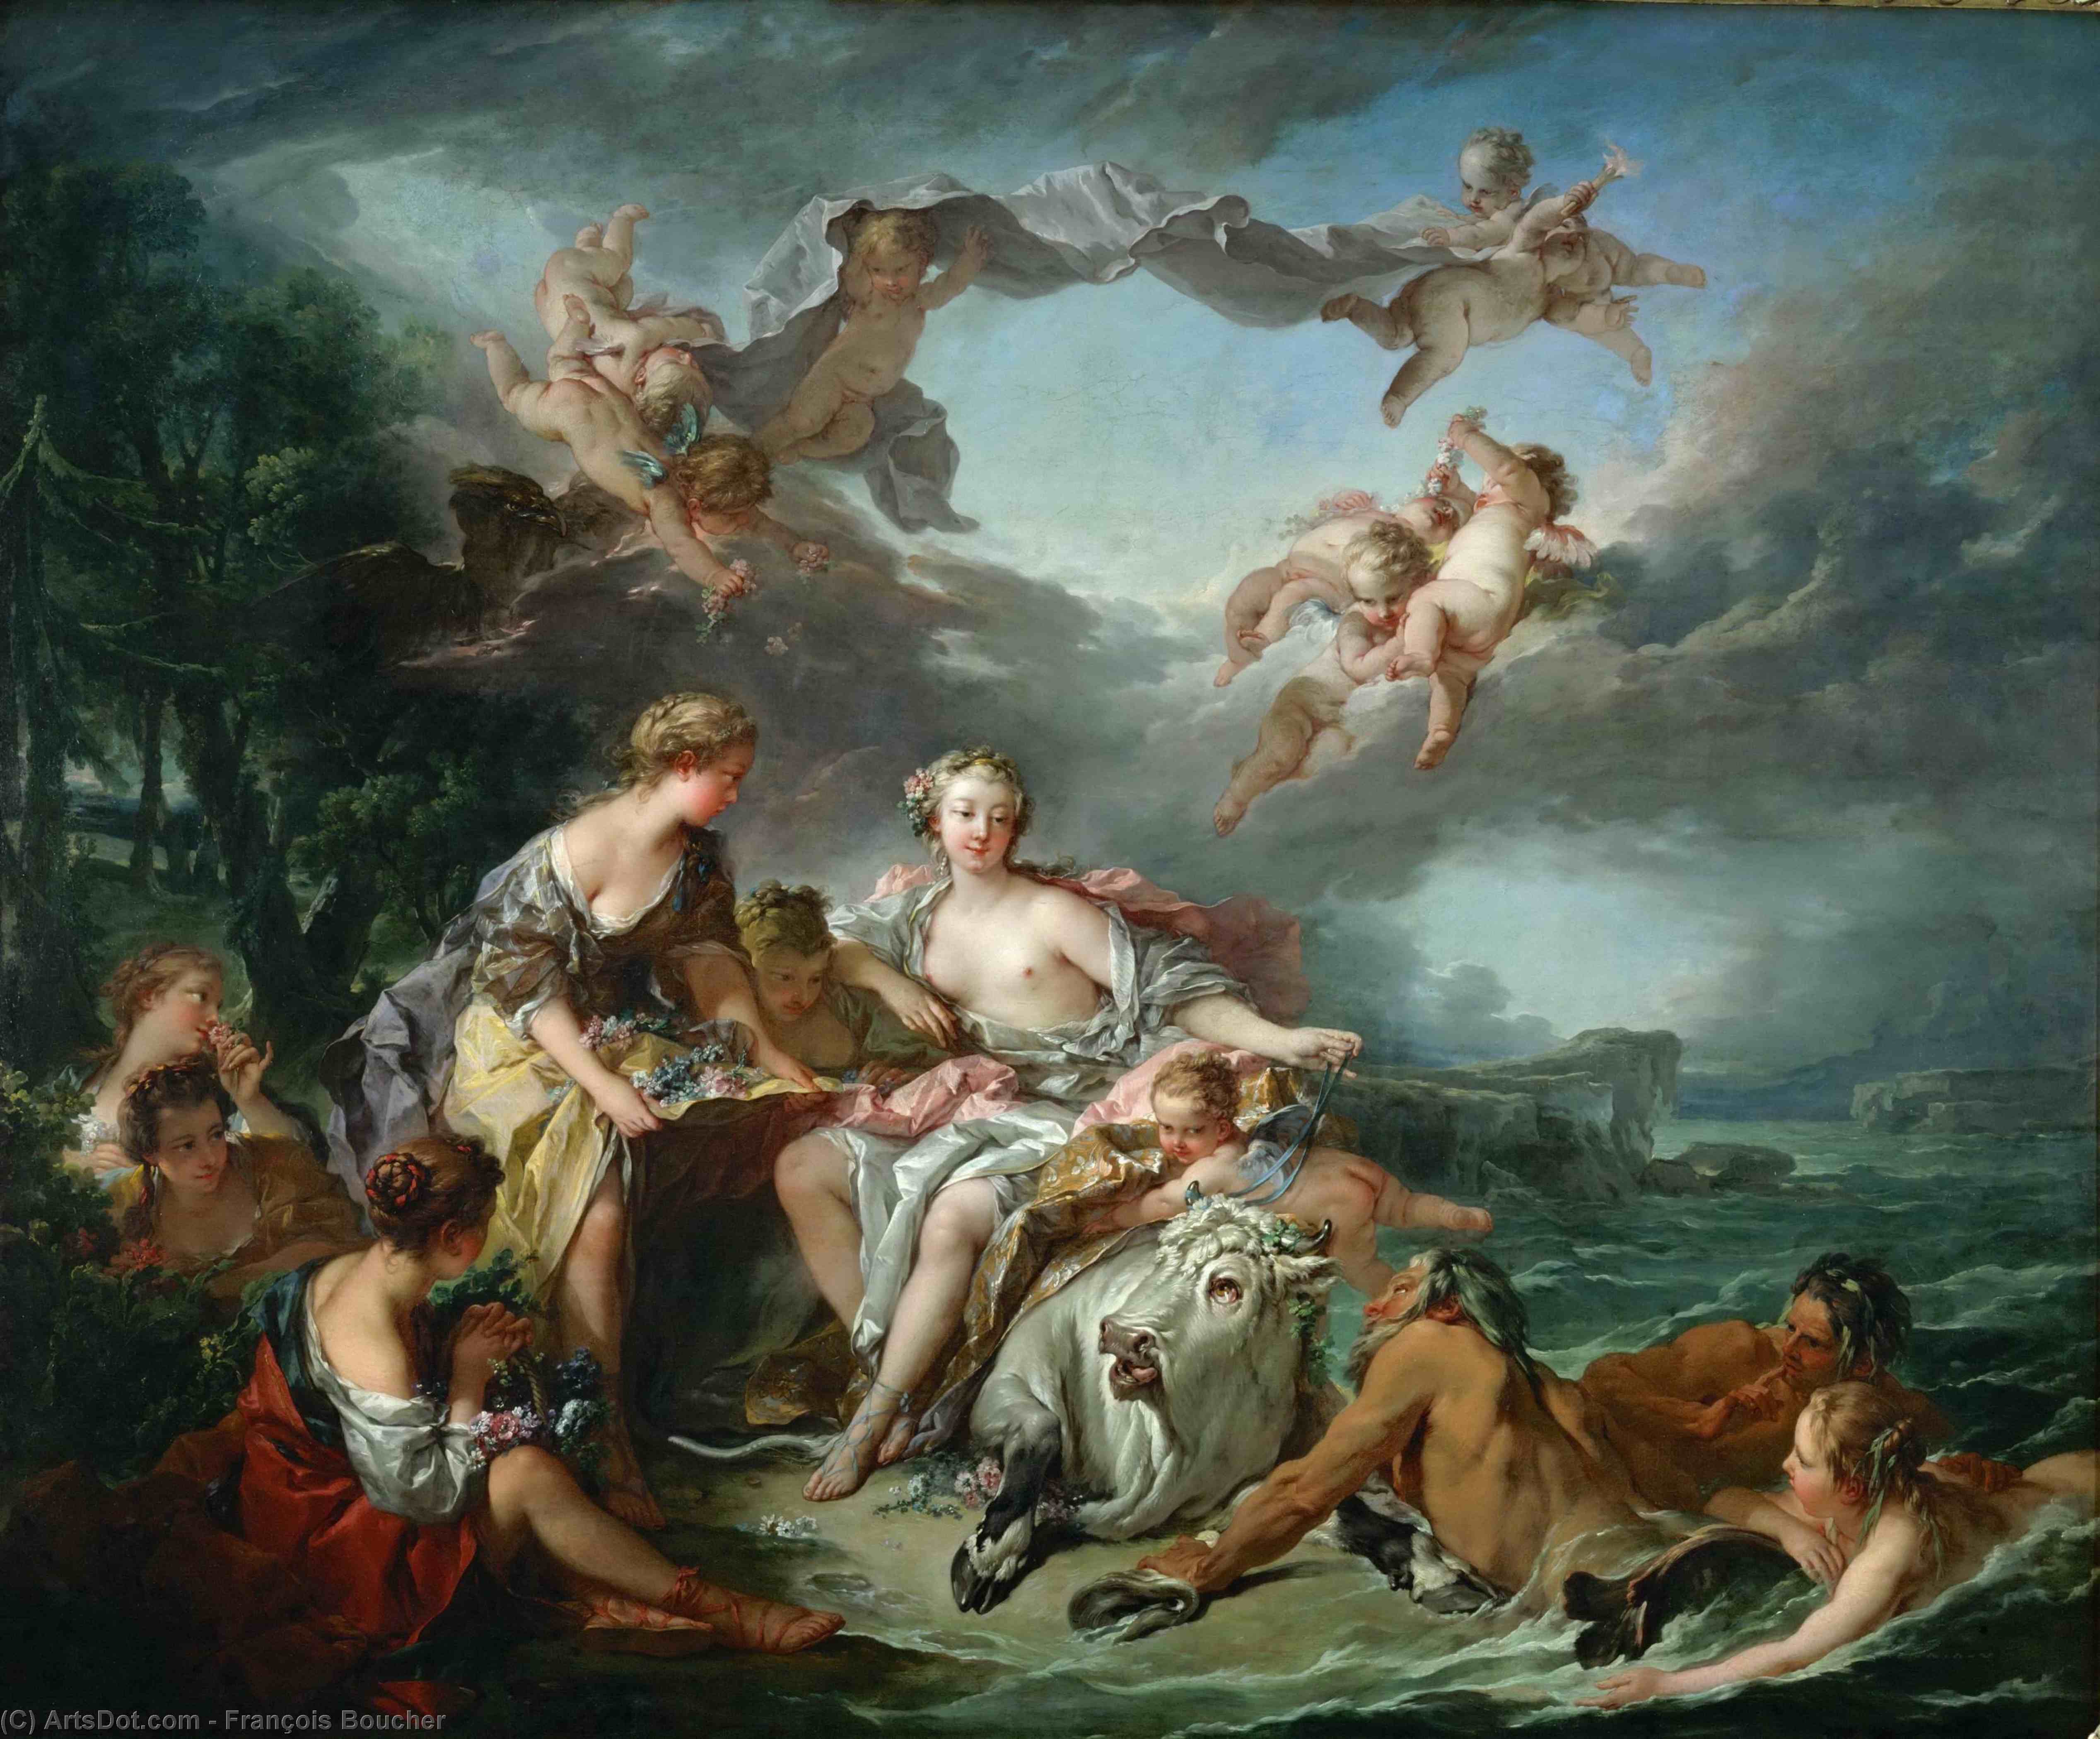 Какие произведения живописи есть. Франсуа Буше похищение Европы. Франсуа Буше Триумф Венеры. Франсуа Буше (1703—1770). Франсуа Буше «Триумф Венеры» (1740).